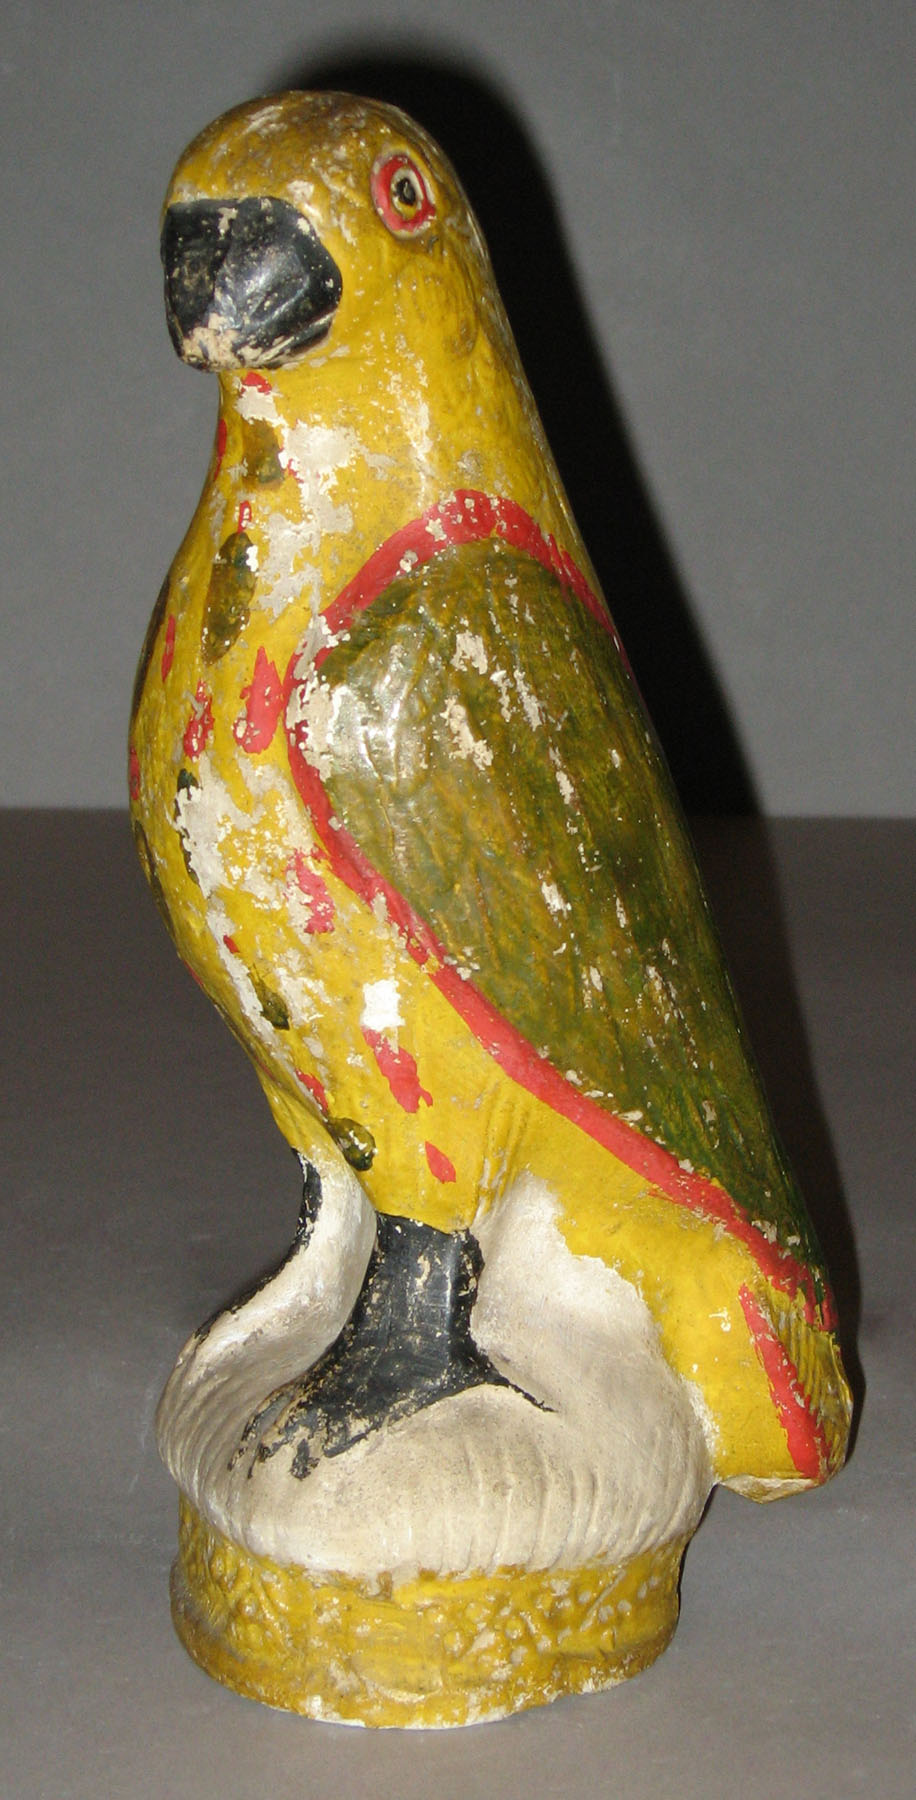 1964.1711 Chalkware bird (parrot)